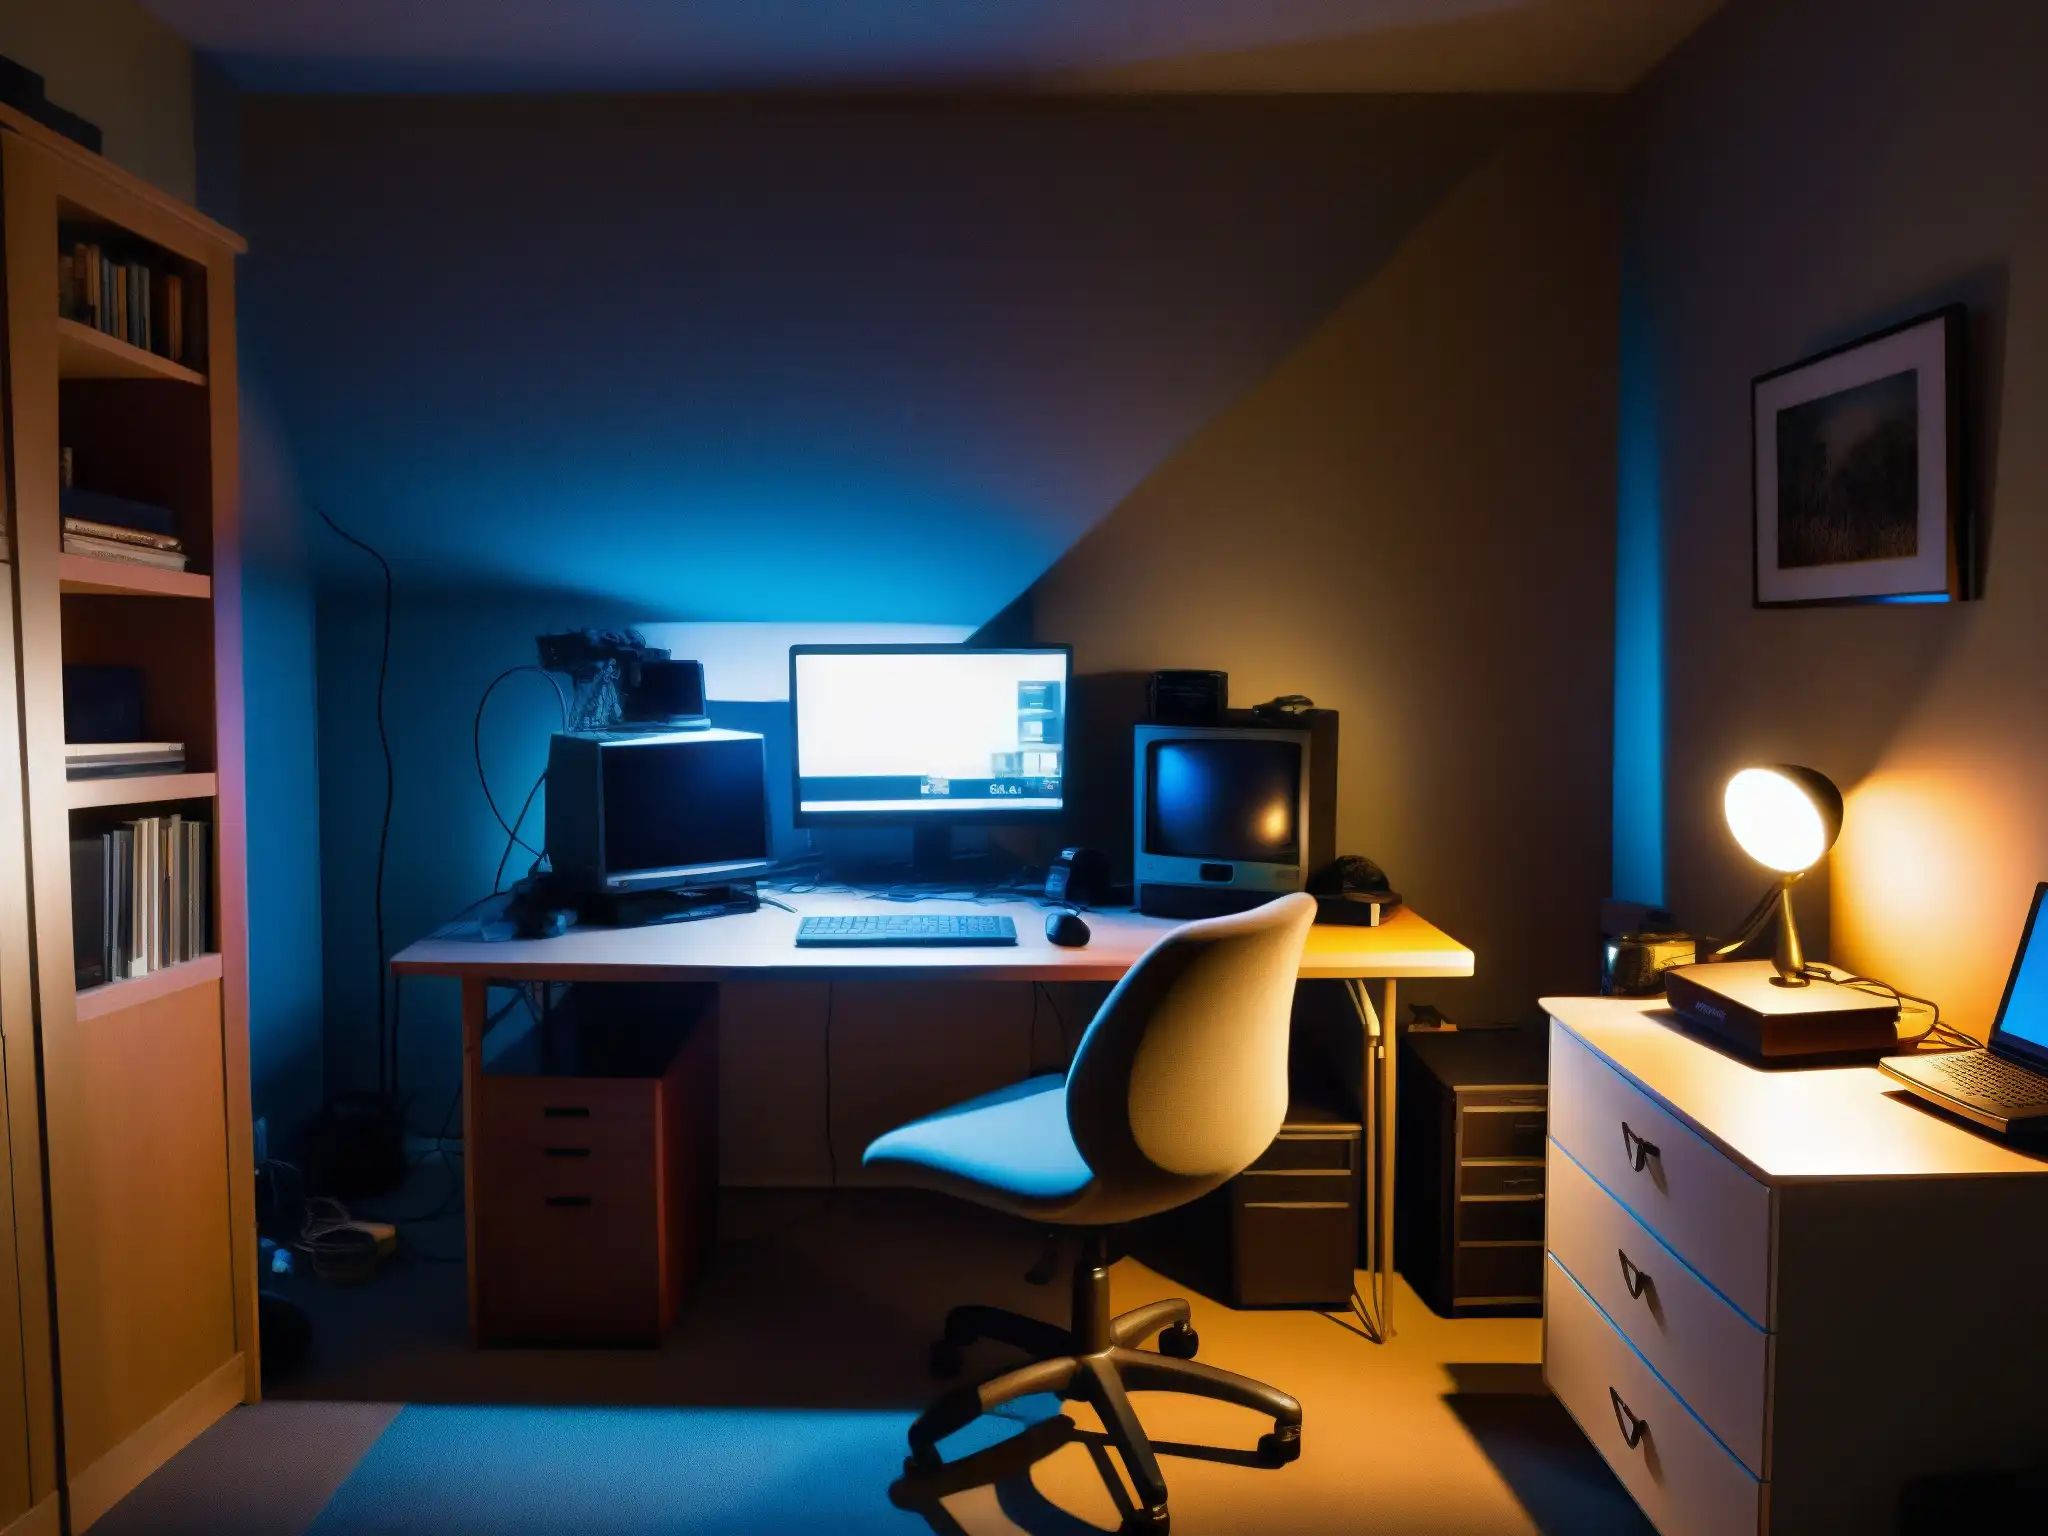 Una habitación sombría con escritorio y webcam, cables y muebles antiguos